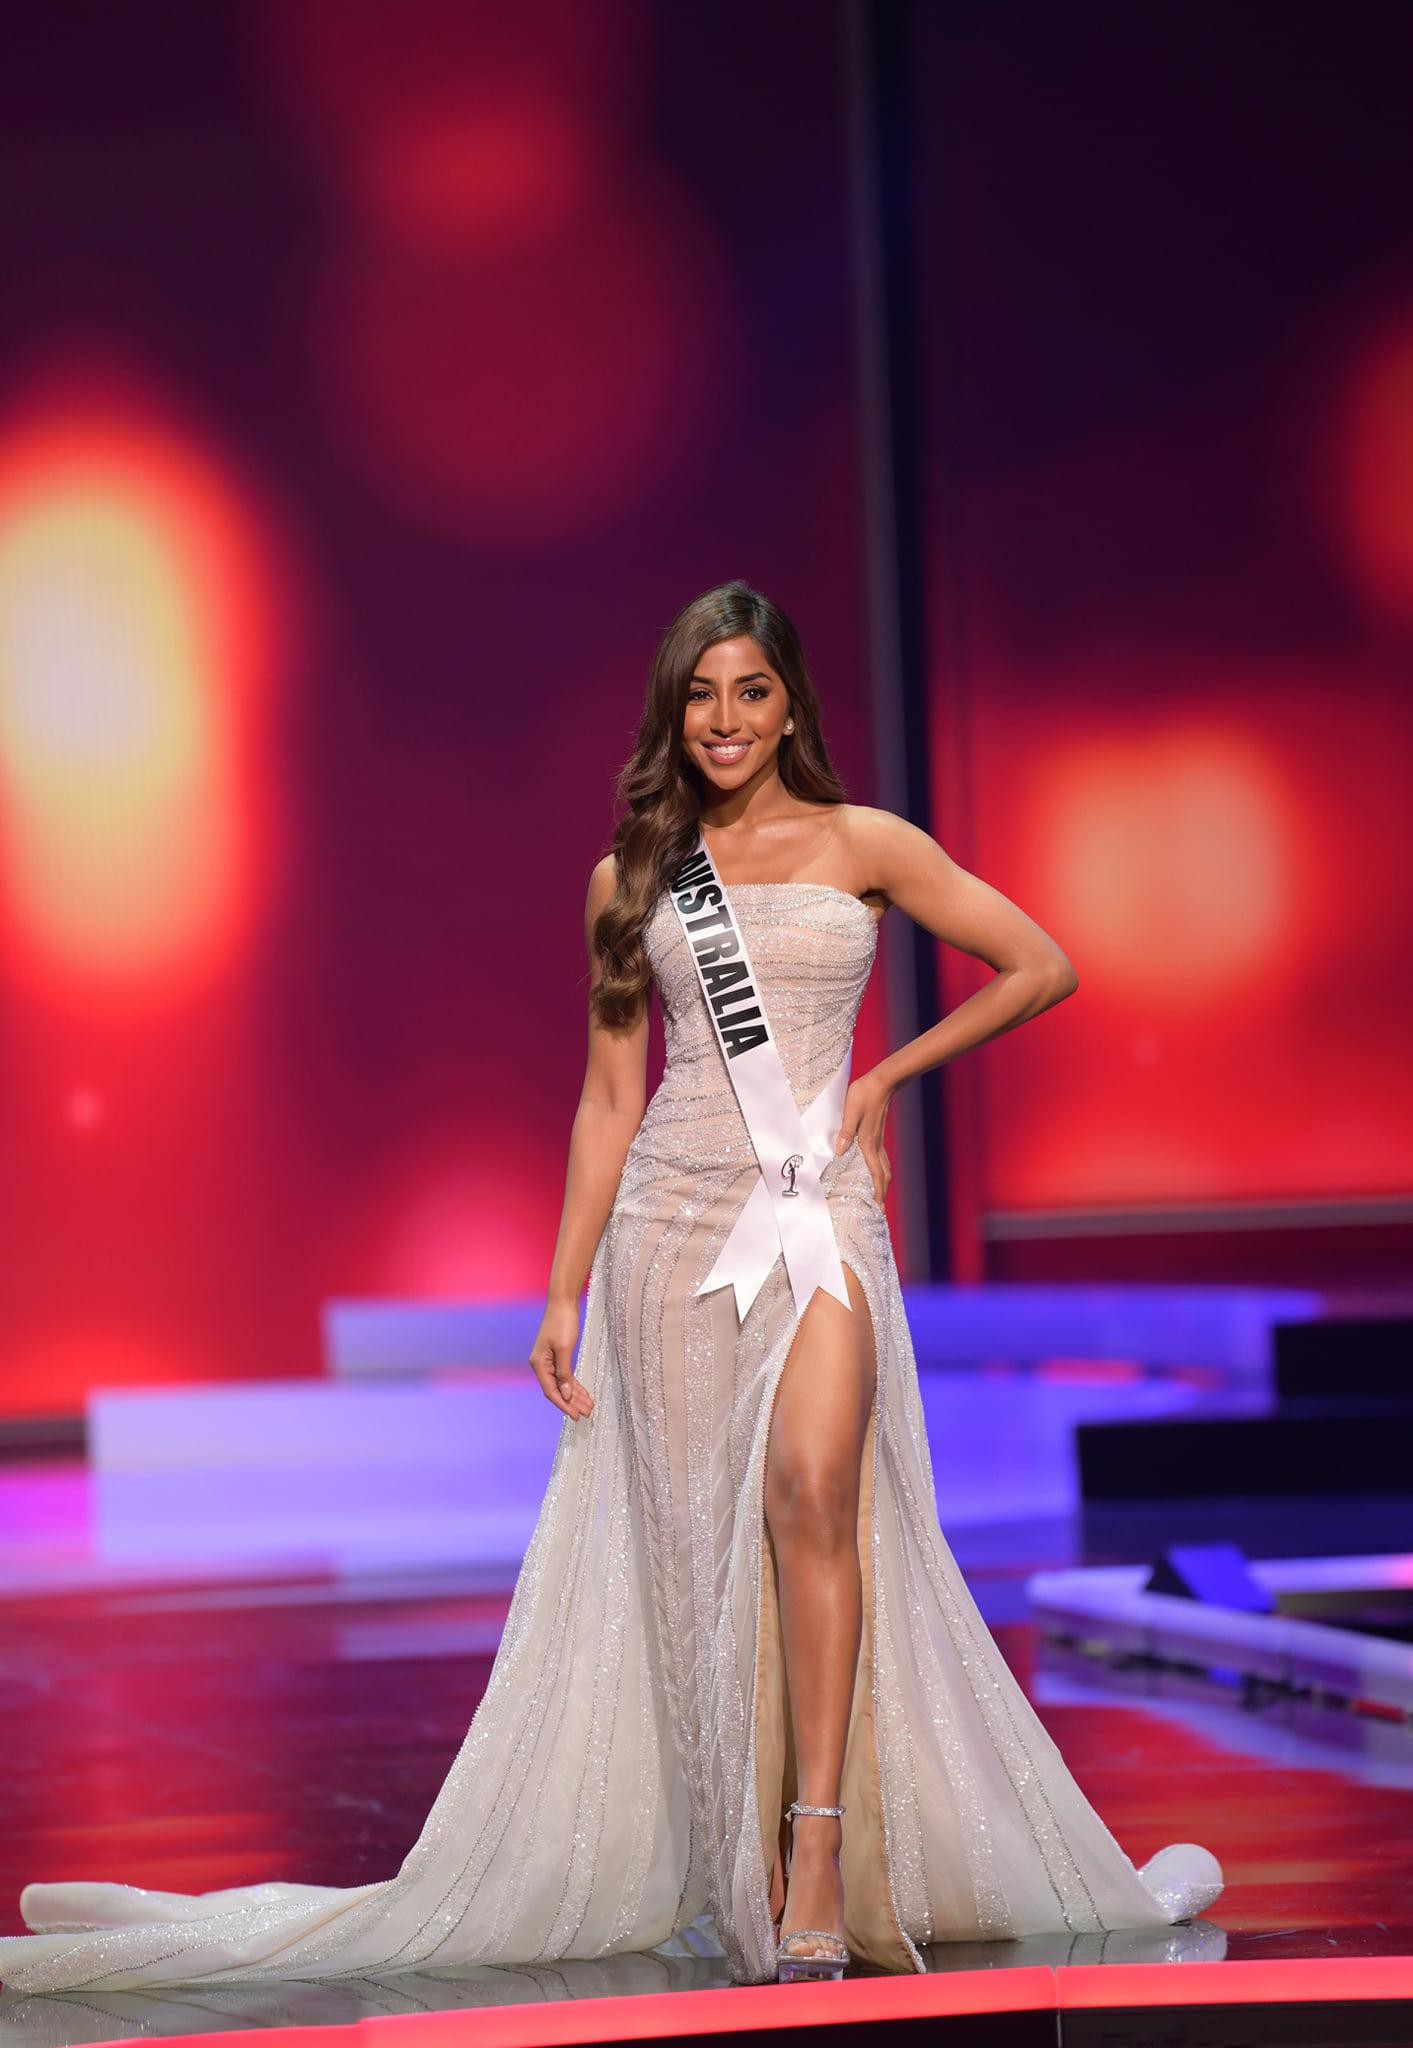 Điều kỳ diệu ở cuộc thị sắc đẹp Miss Universe: Dù gặp bất lợi, bạn vẫn có thể tỏa sáng theo cách riêng.